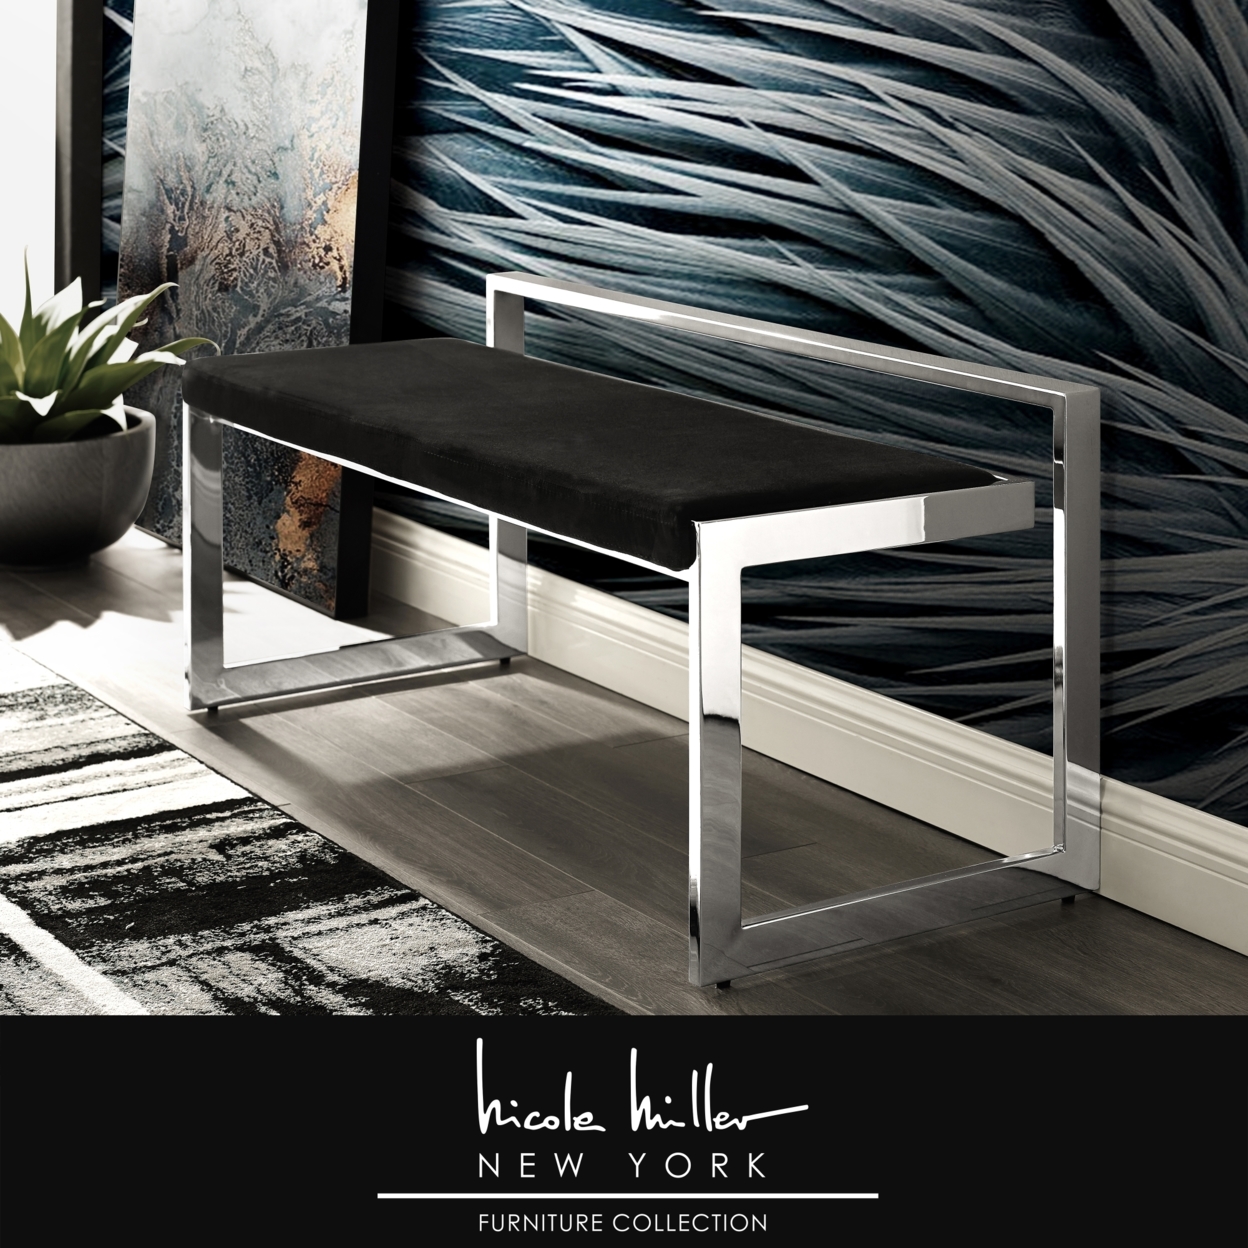 Nicole Miller Rashad Velvet Bench-Rectangular-Stainless Steel Base-Geometric Design-Modern Contemporary - Black/Chrome